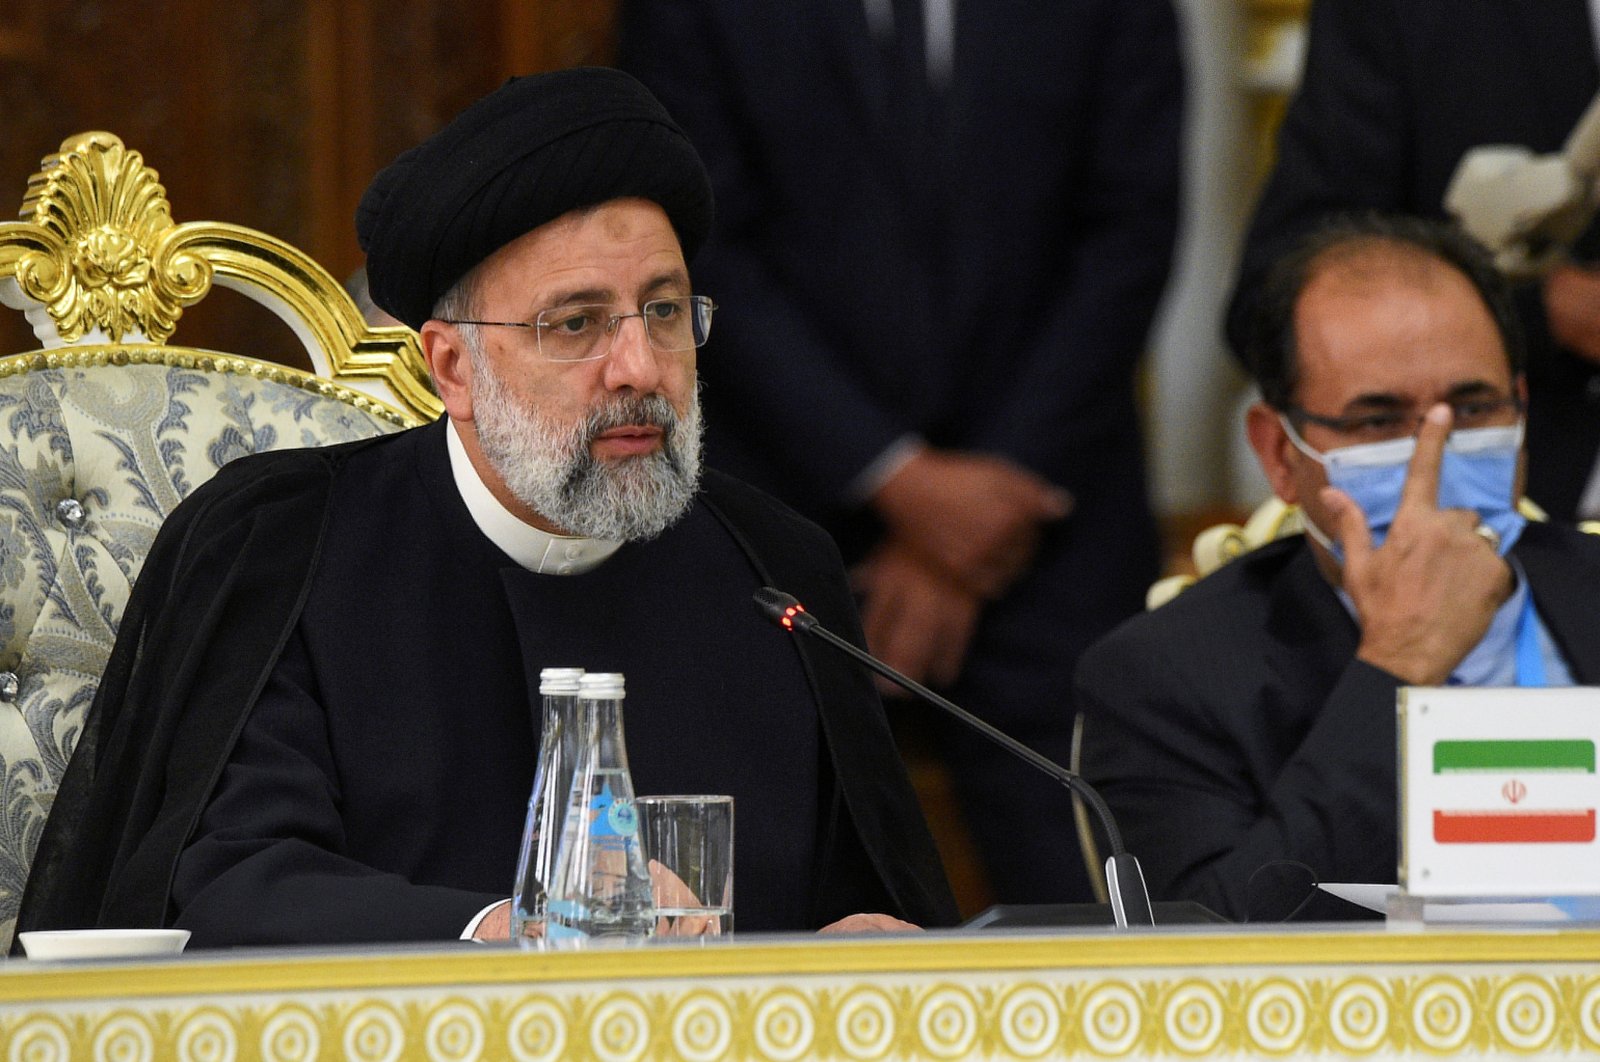 Iran ingin jaminan AS akan menegakkan kesepakatan nuklir jika pembicaraan berhasil